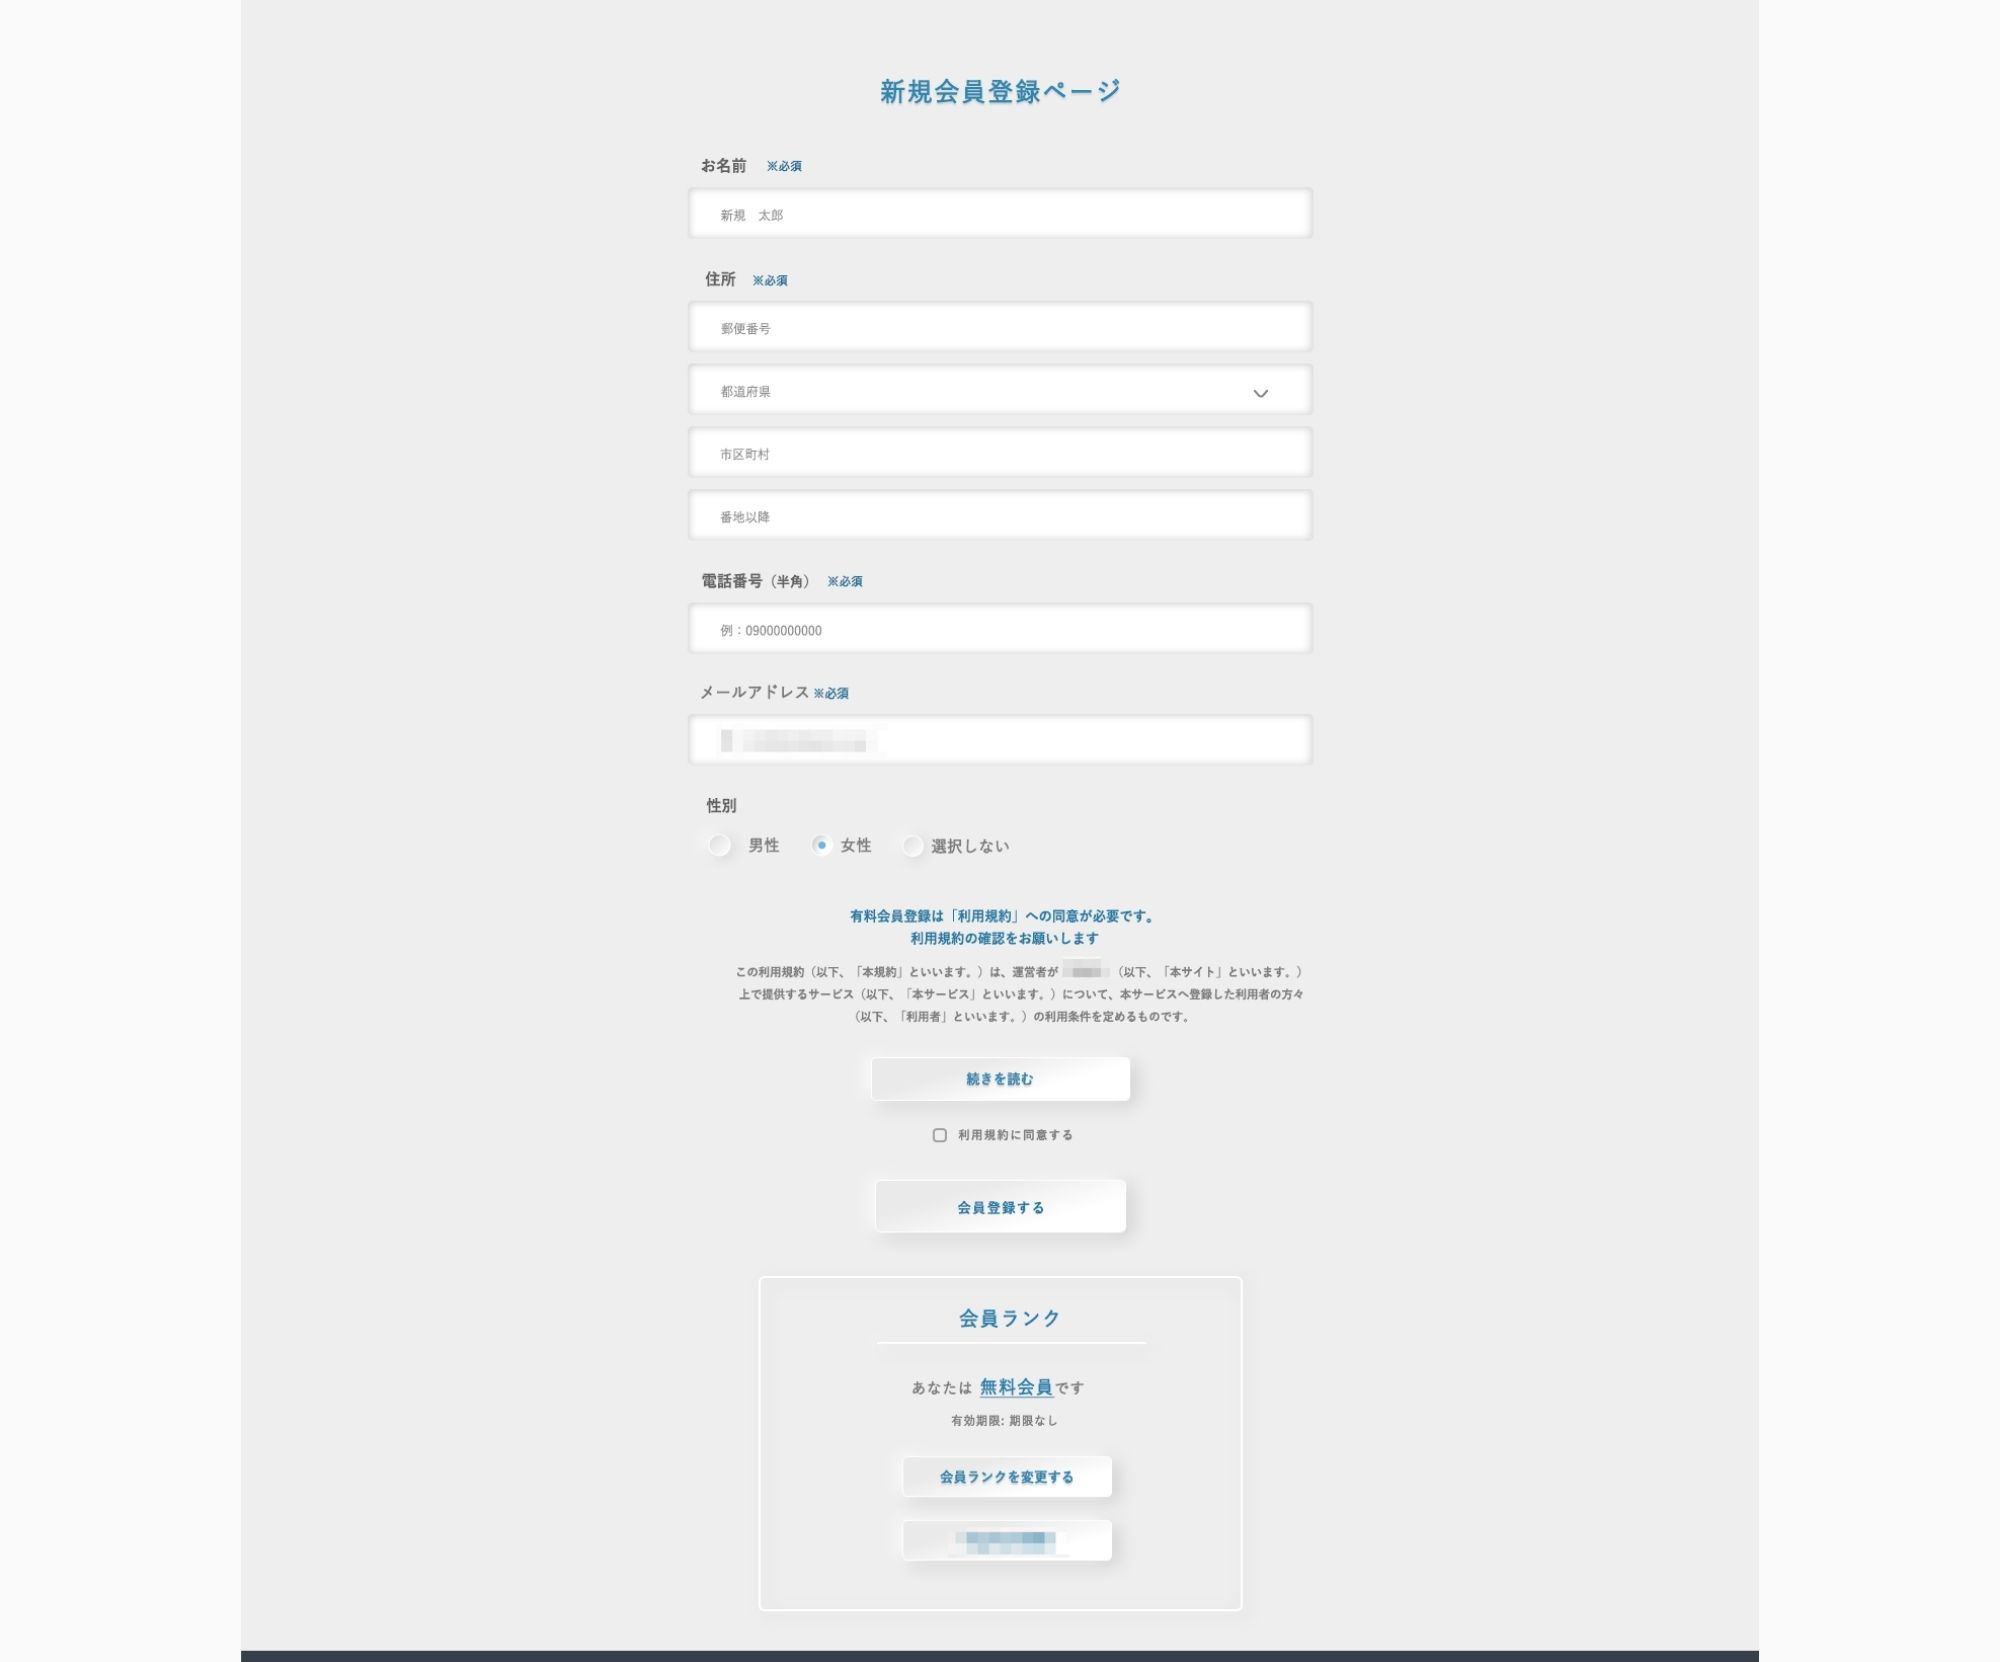 ビルドサロン ビジネスマッチングサイト 会員登録画面 UI設計例